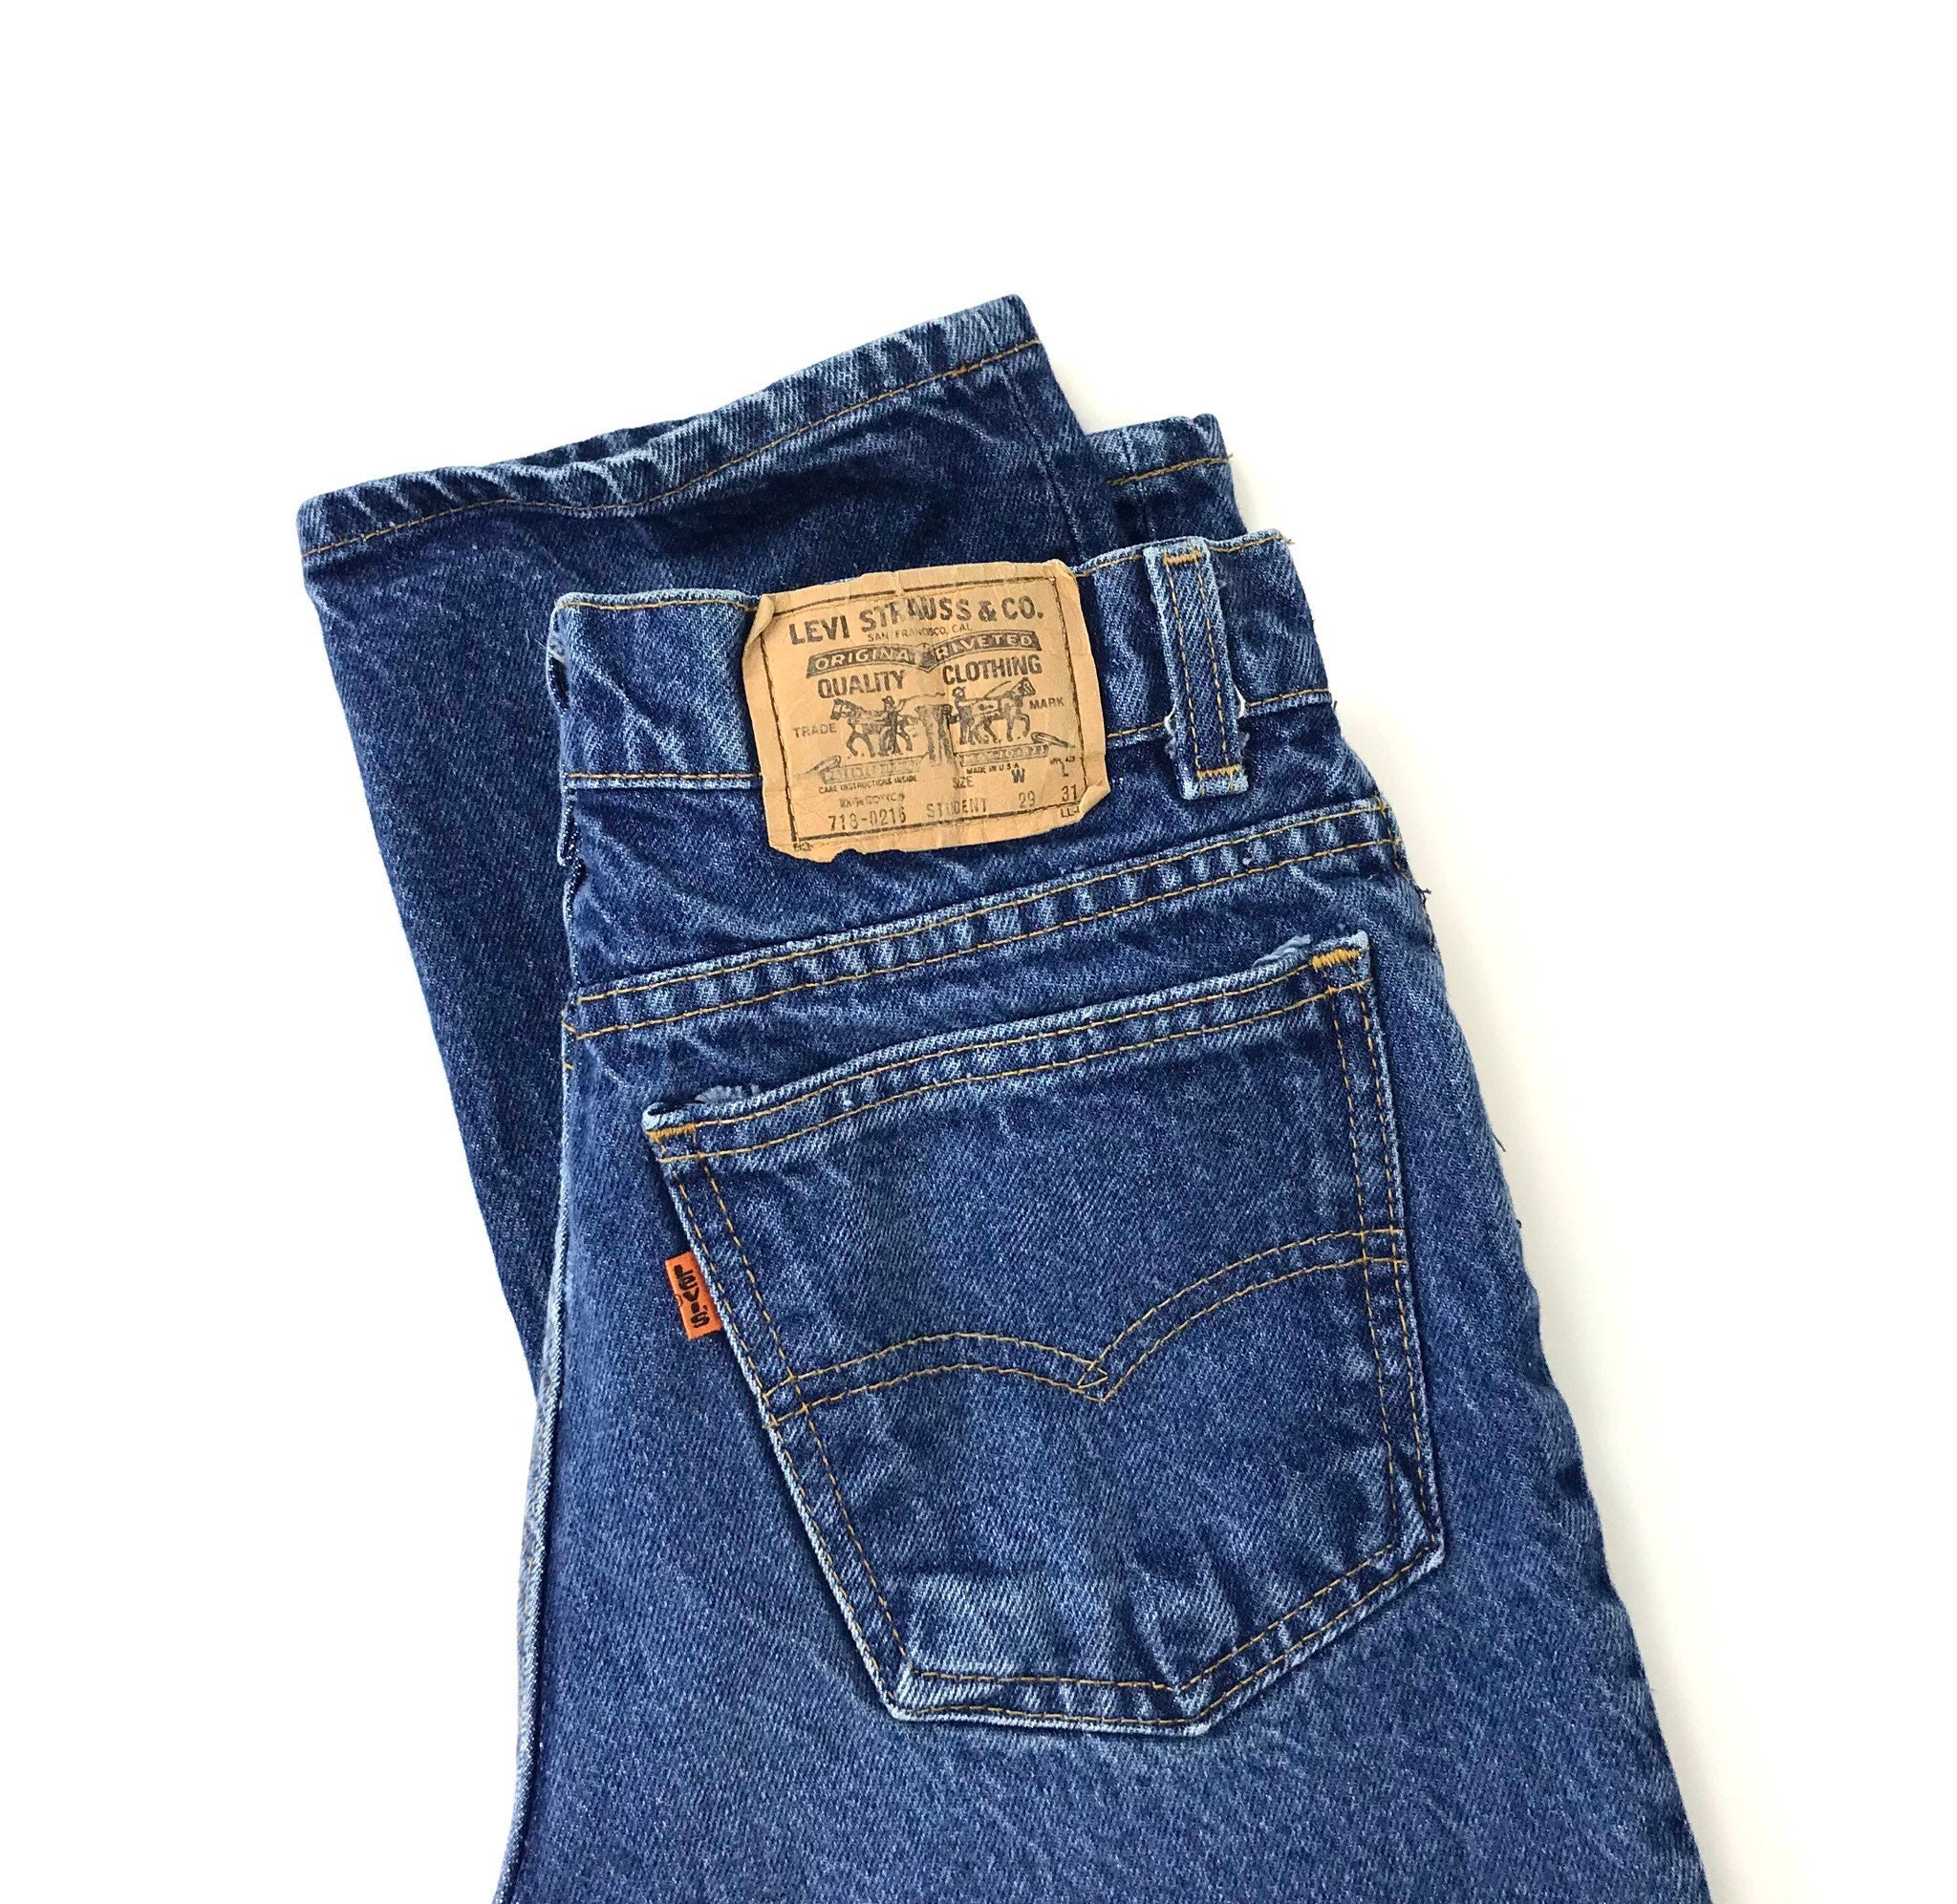 Levi's 718 Student Fit Jeans / Size 25